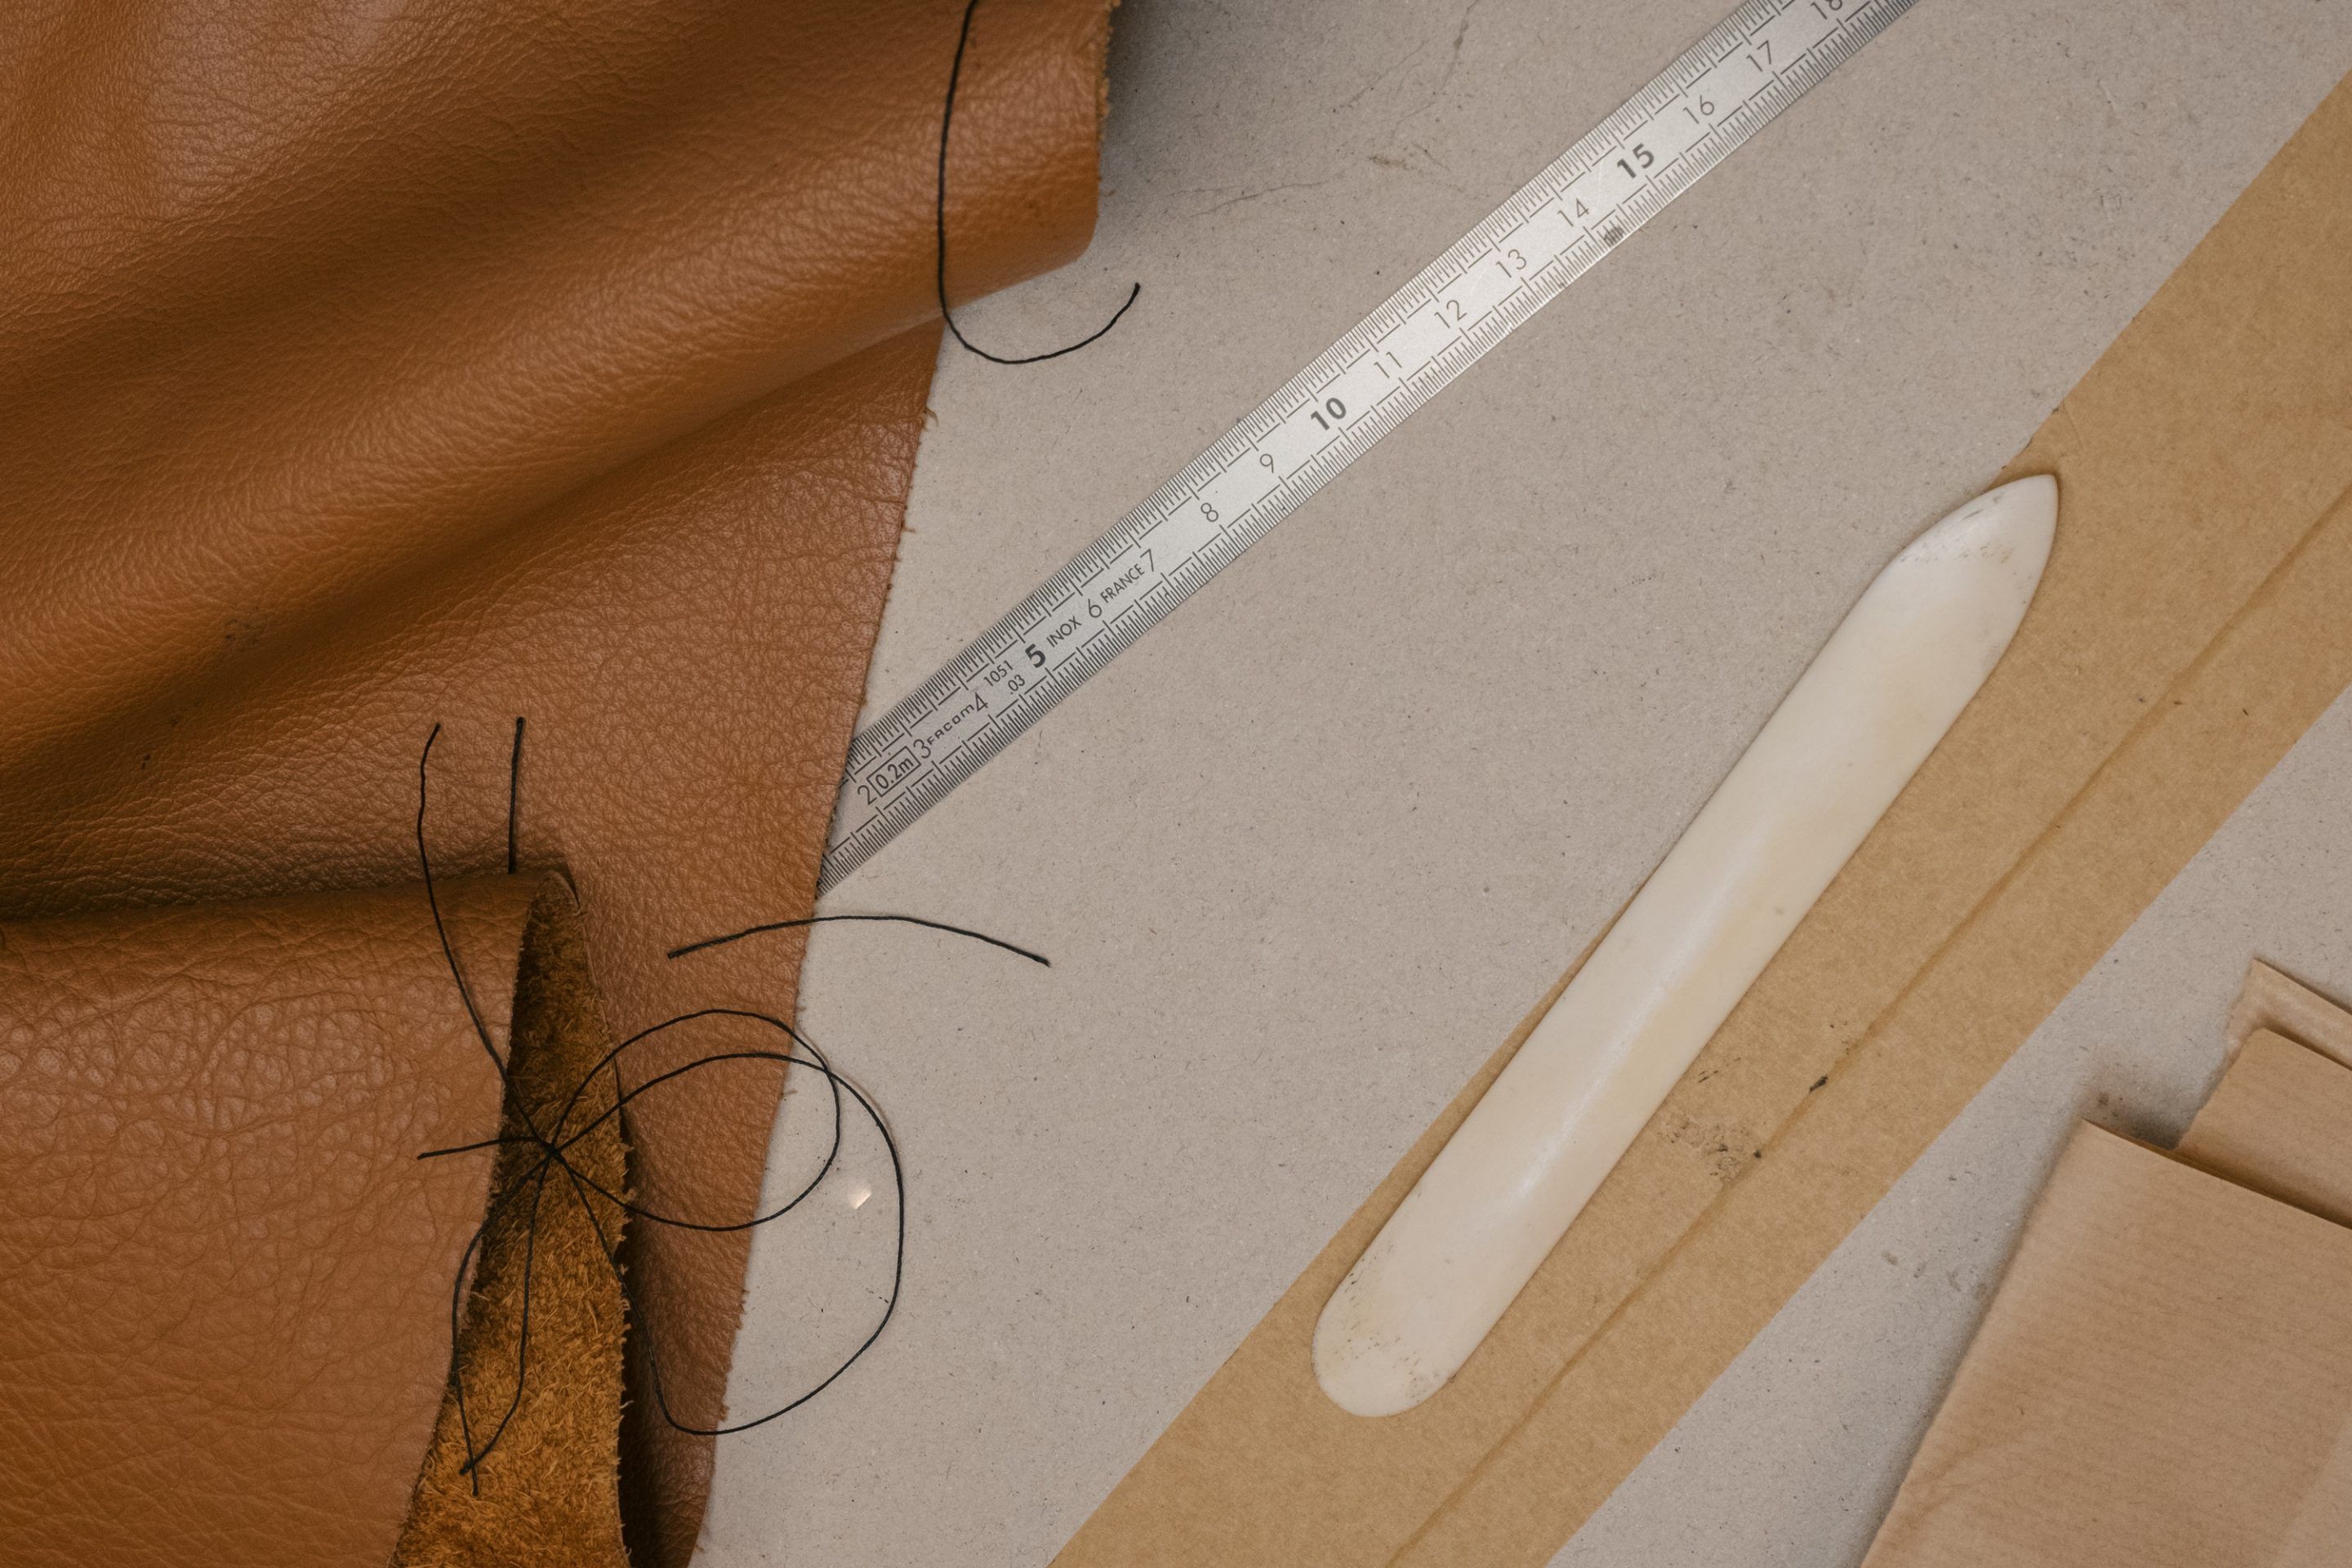 Hermes Birkin bag brown color hand-sewing